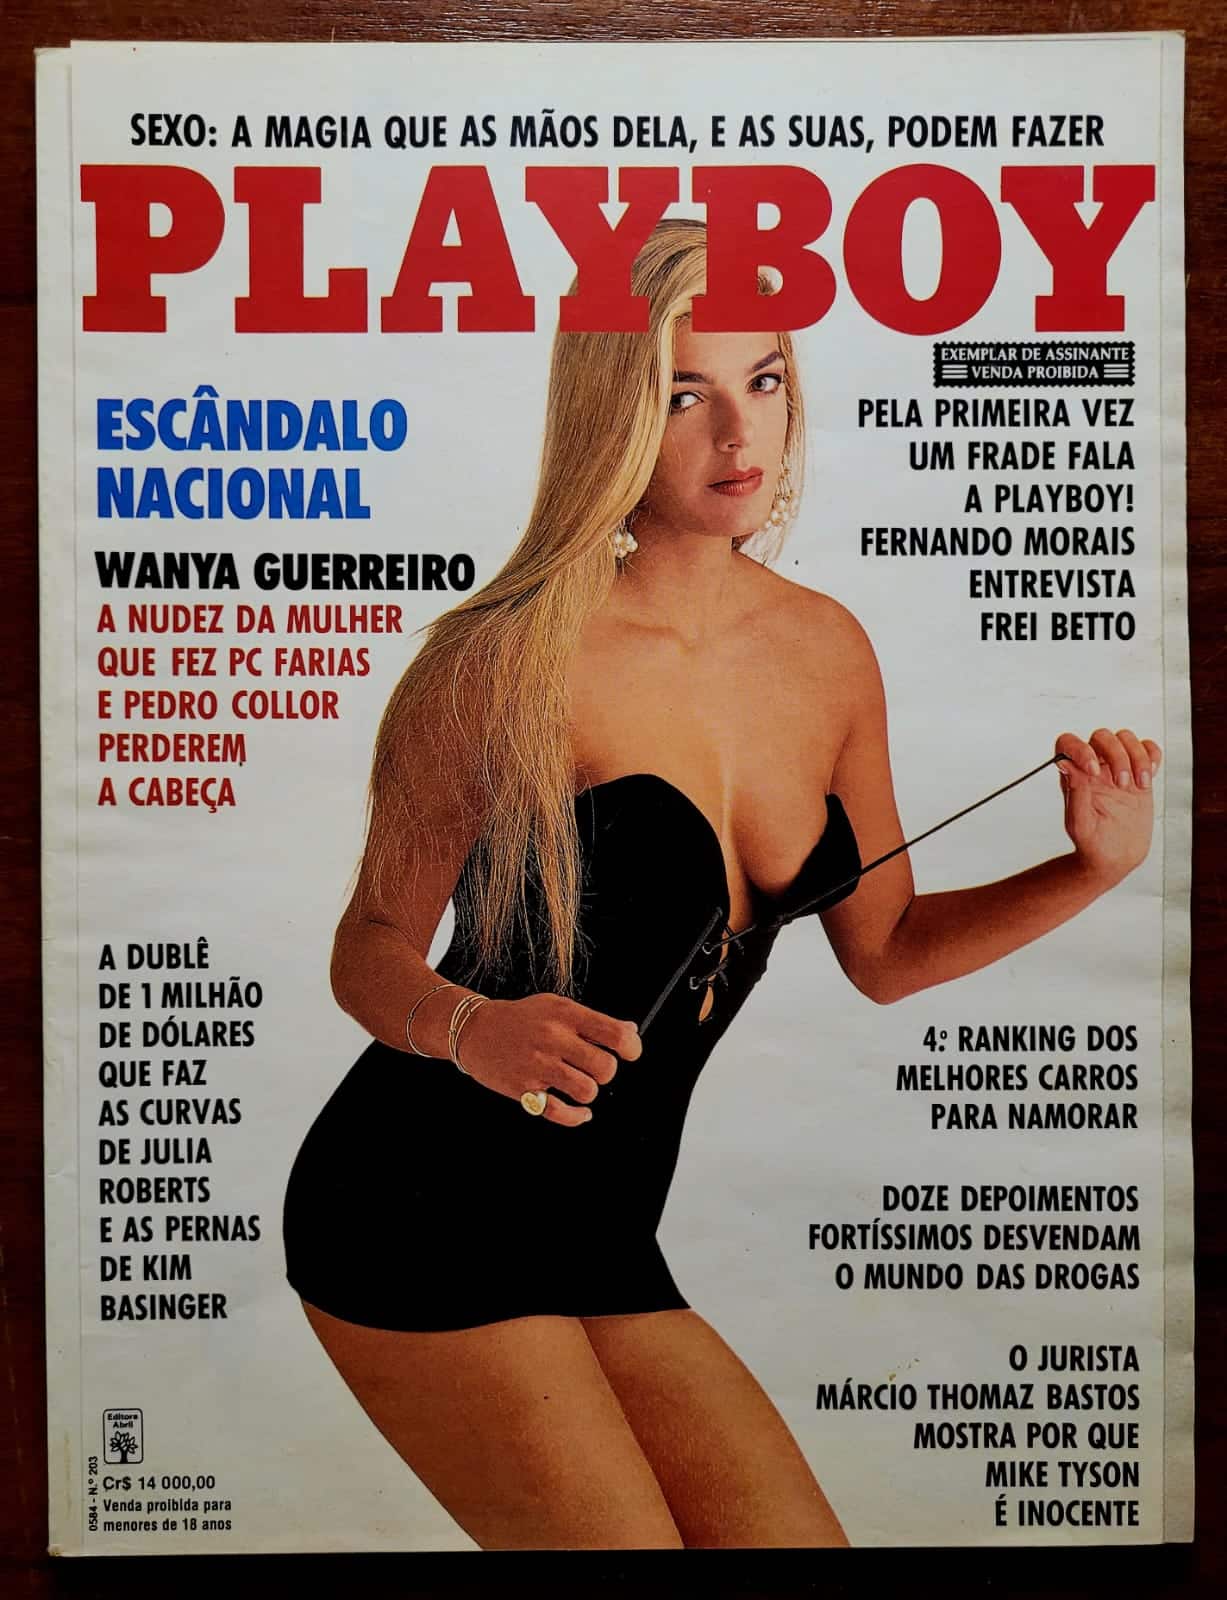 Playboy No 203 Wanya Guerreiro 1 Casa do Colecionador